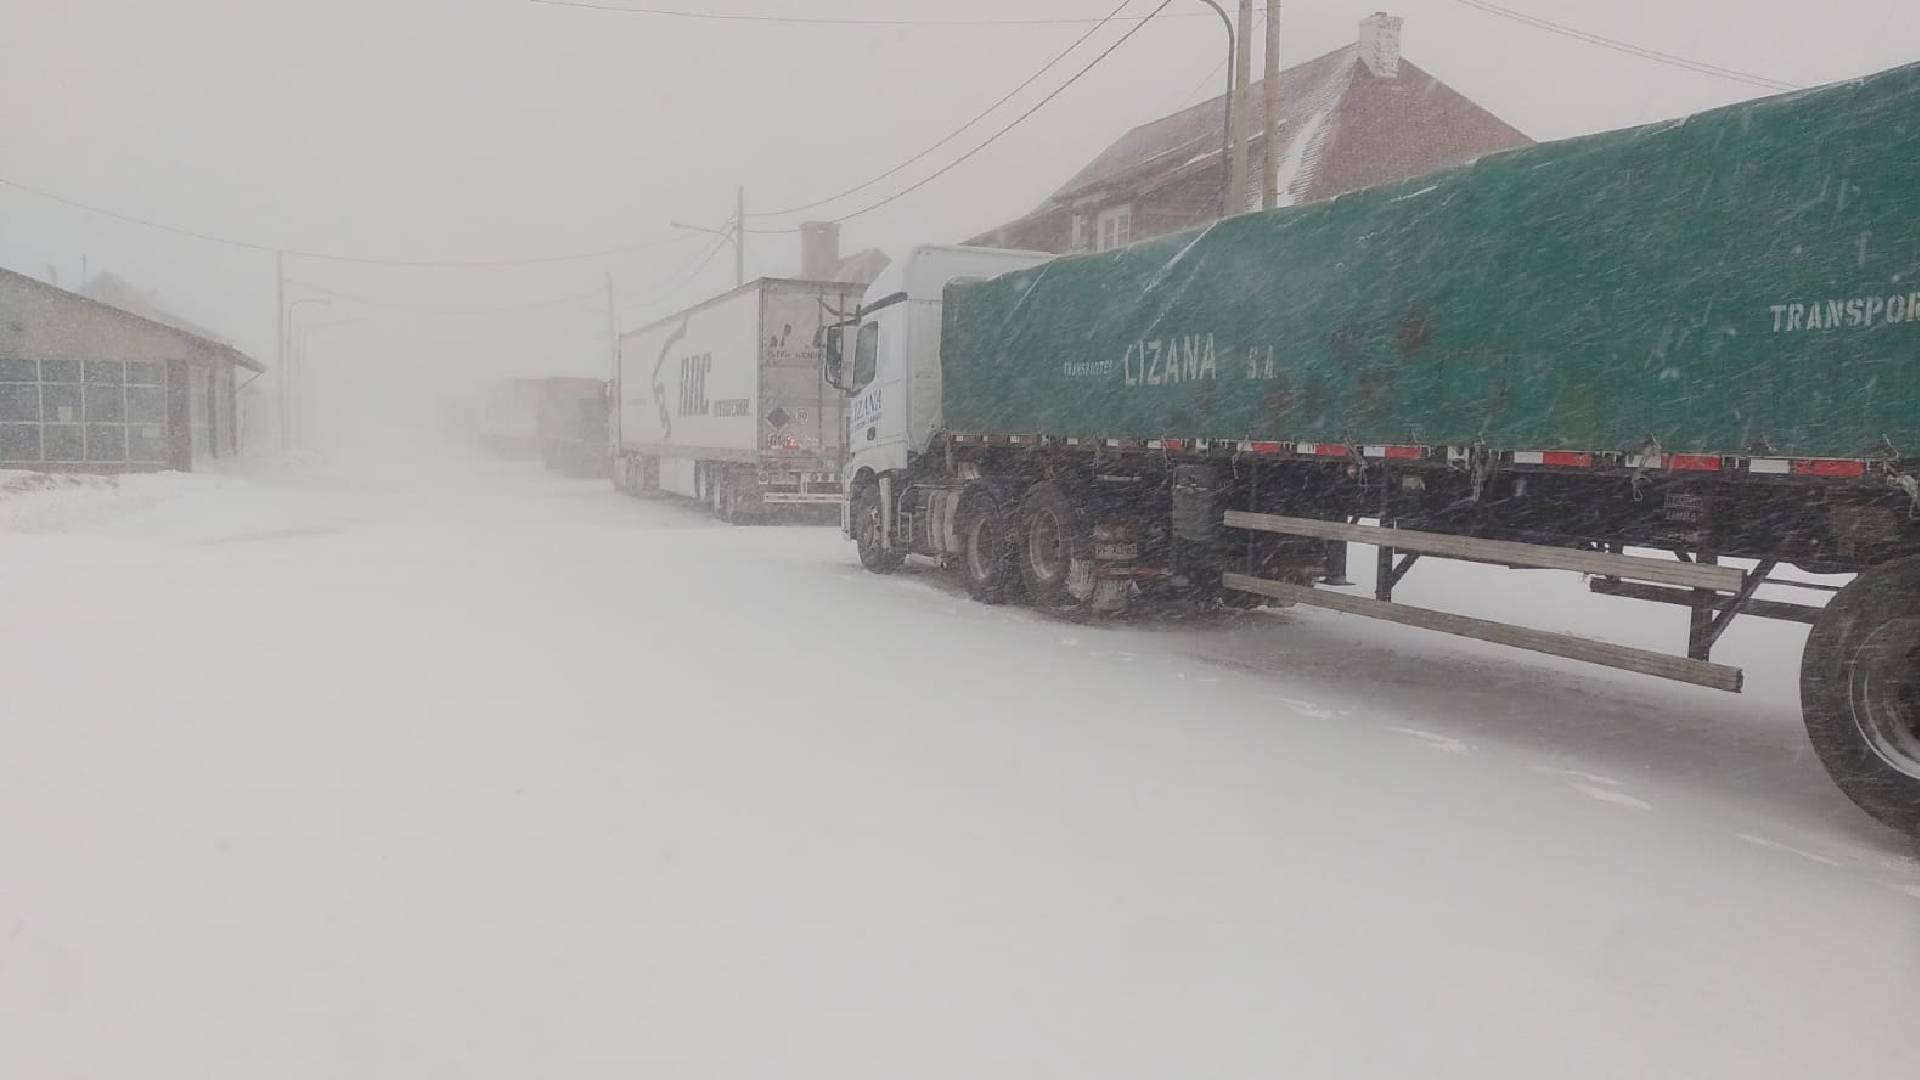 Camiones varados por el temporal de nieve (Foto: Asociación de Propietarios de Camiones de Mendoza)